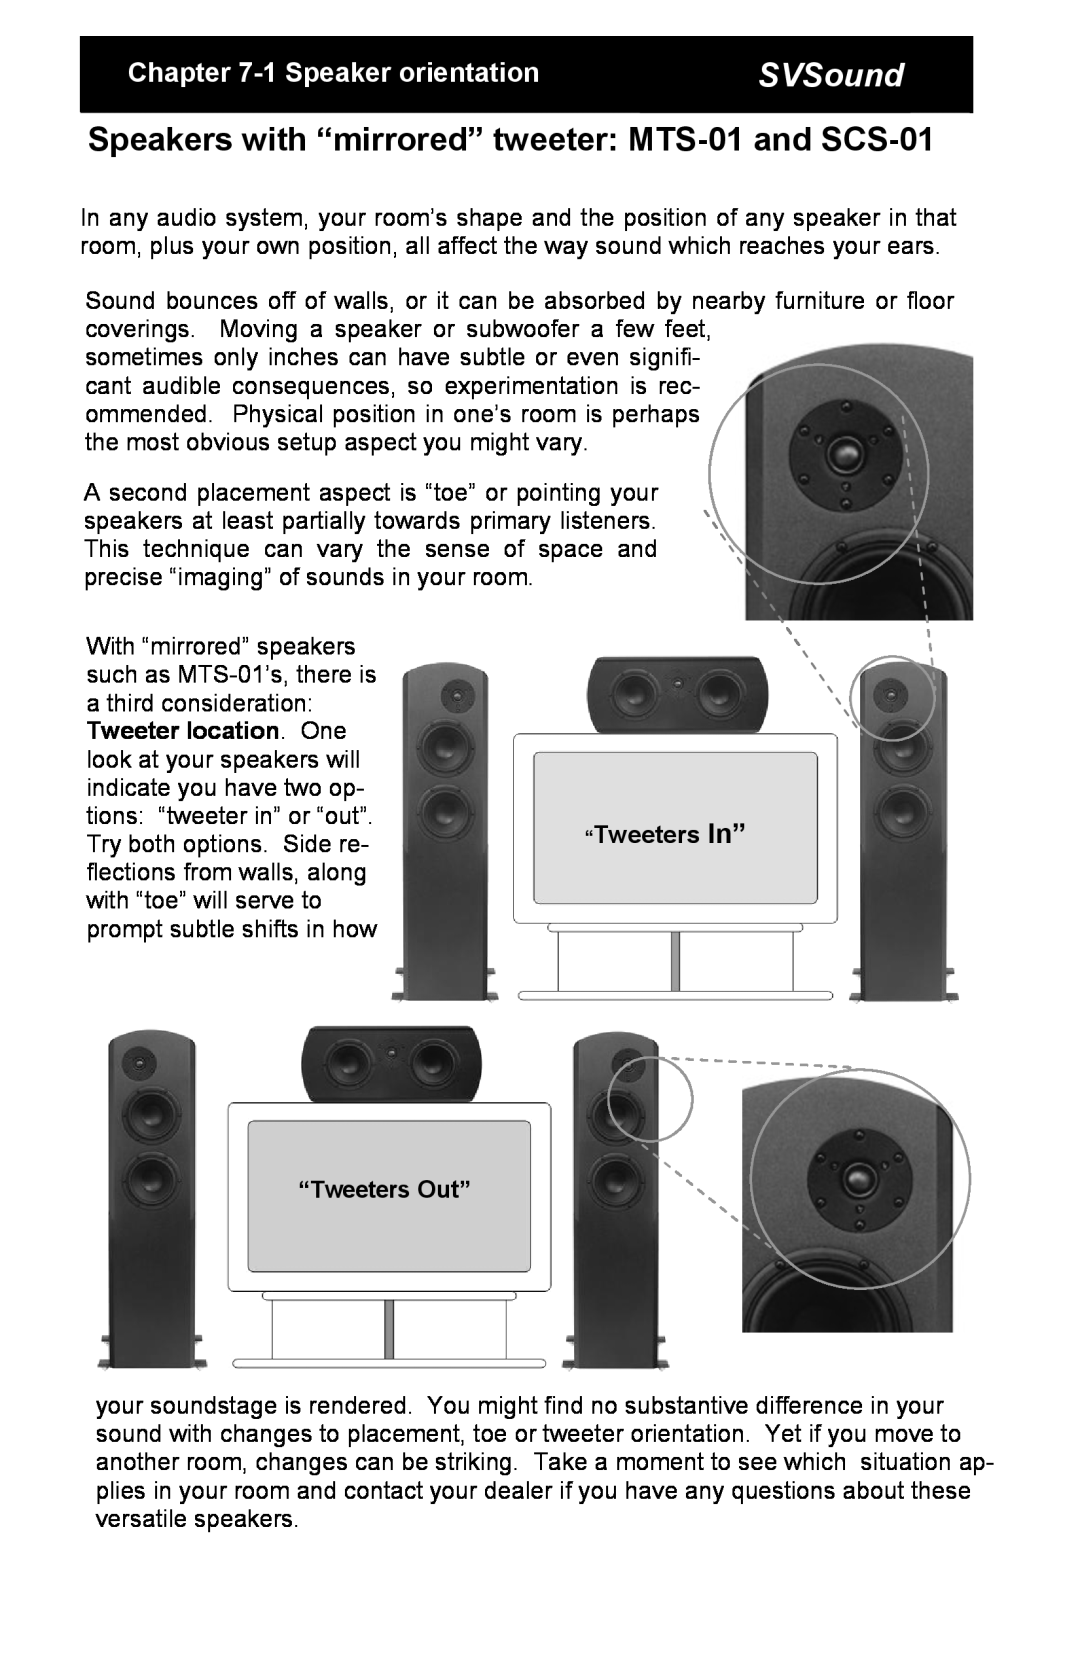 SV Sound SCS-01, MTS-01, SBS-01 specifications SVSound, 1Speaker orientation 